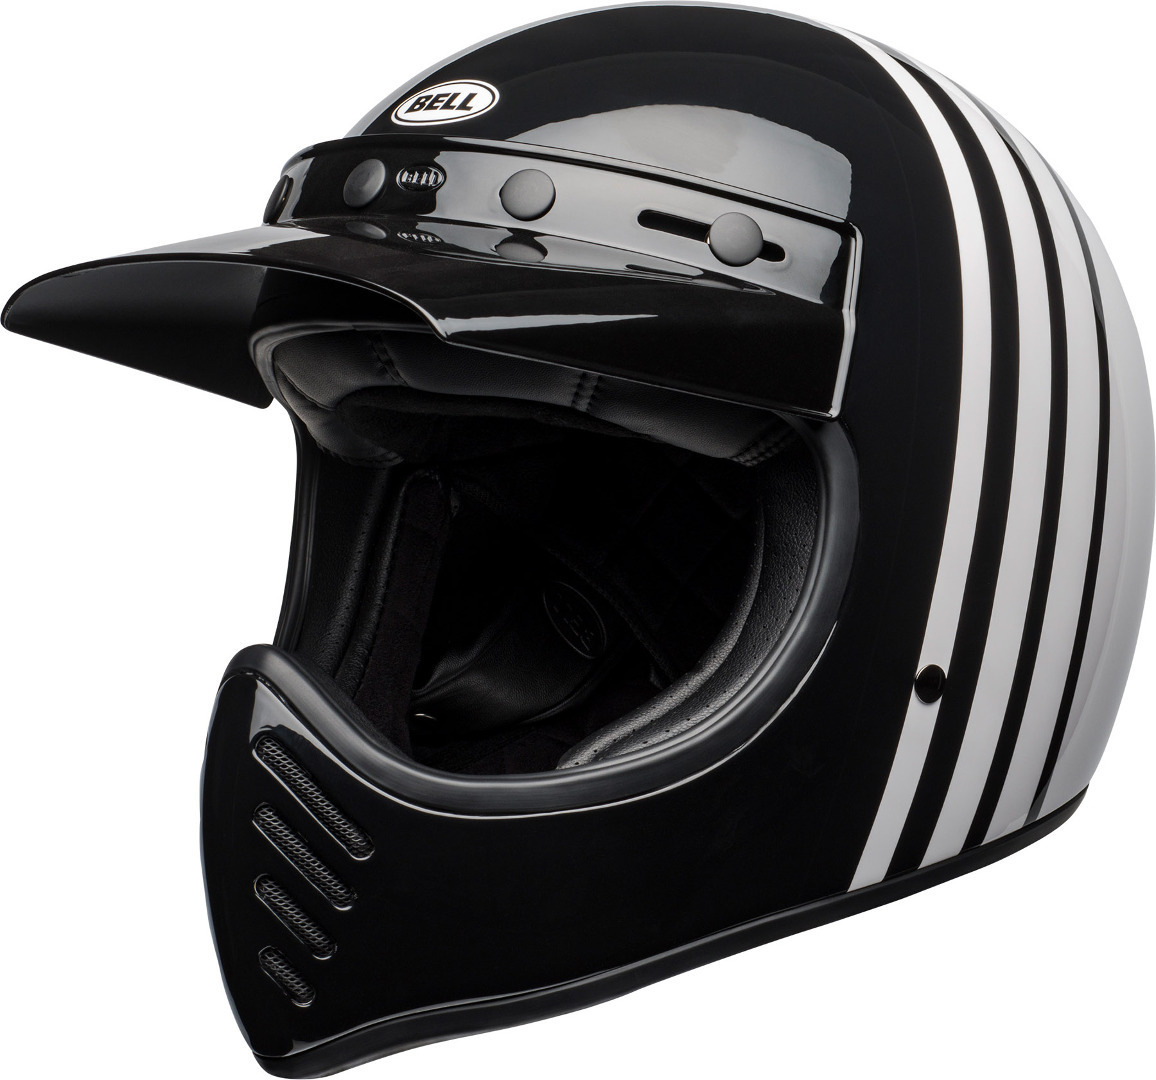 Image of Bell Moto-3 Reverb casco, nero-bianco, dimensione S